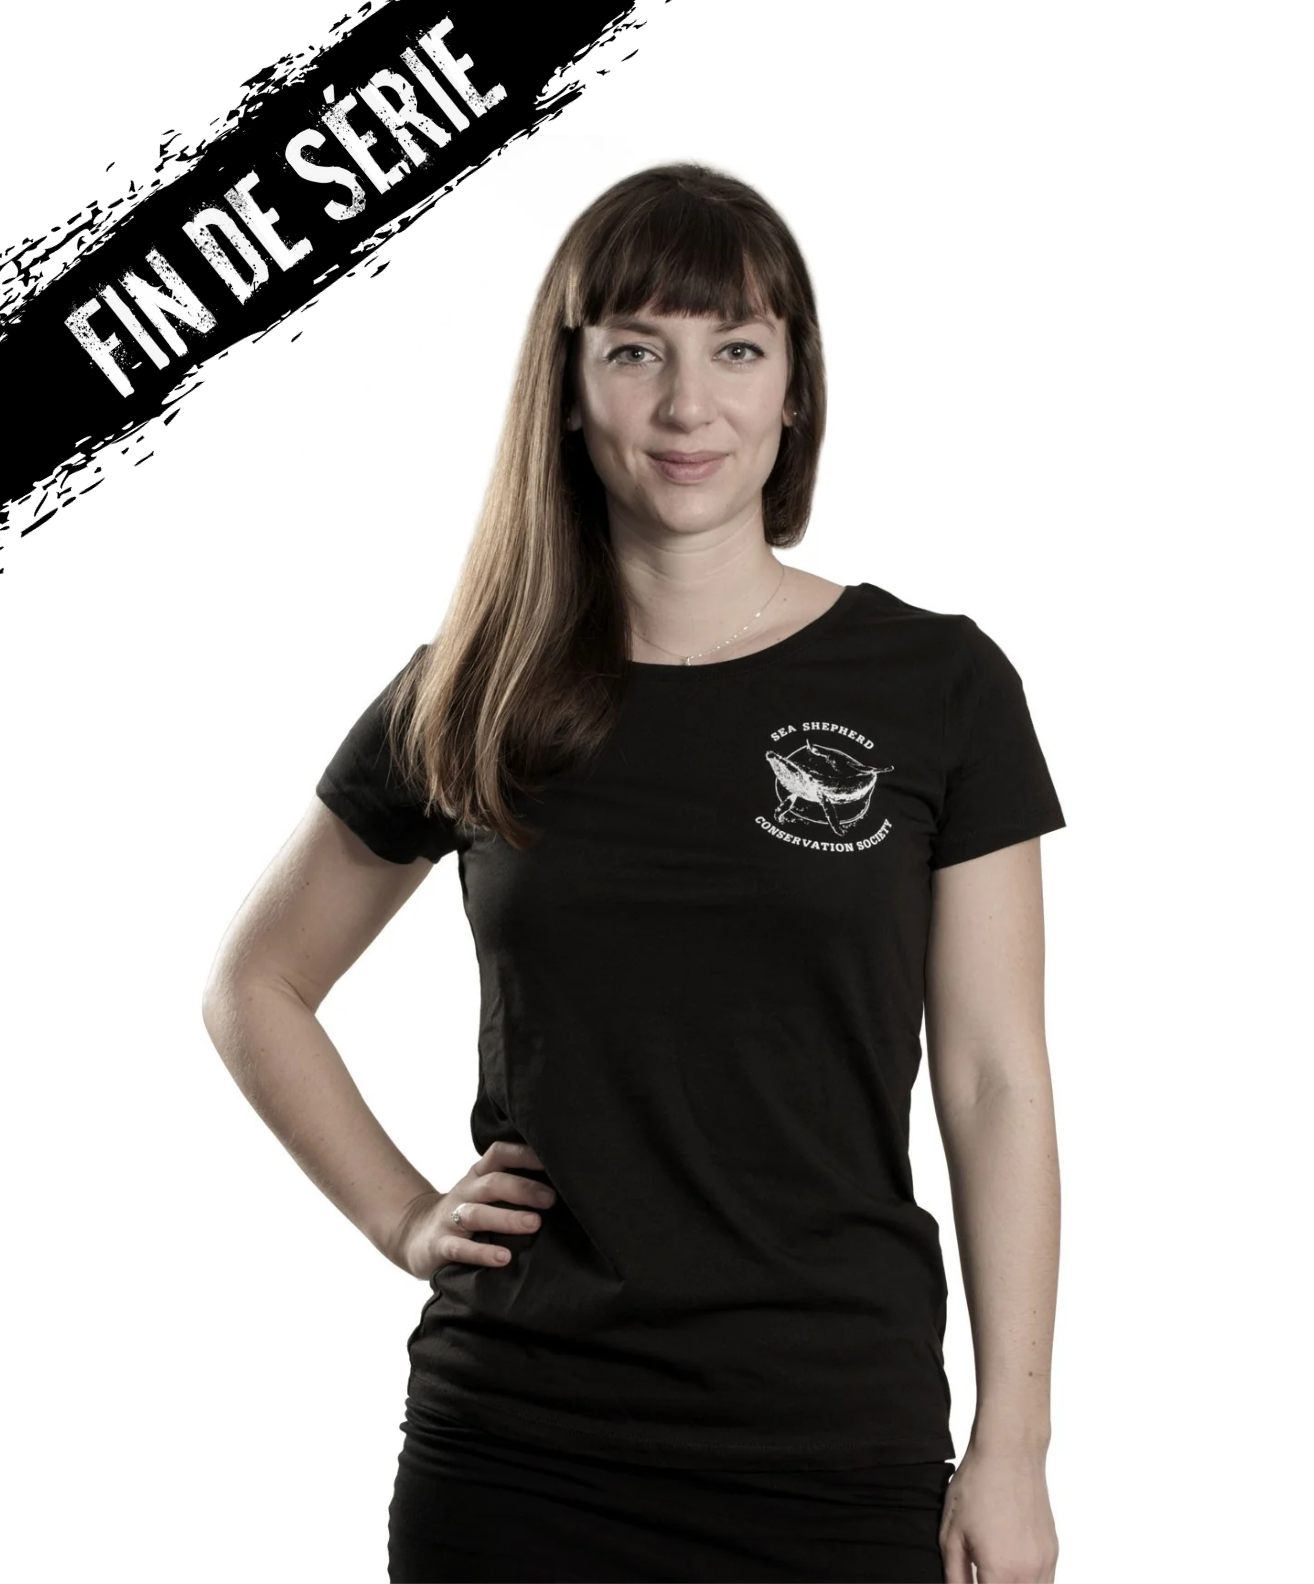 T-shirt Femme Opération Kimberley Miinimbi